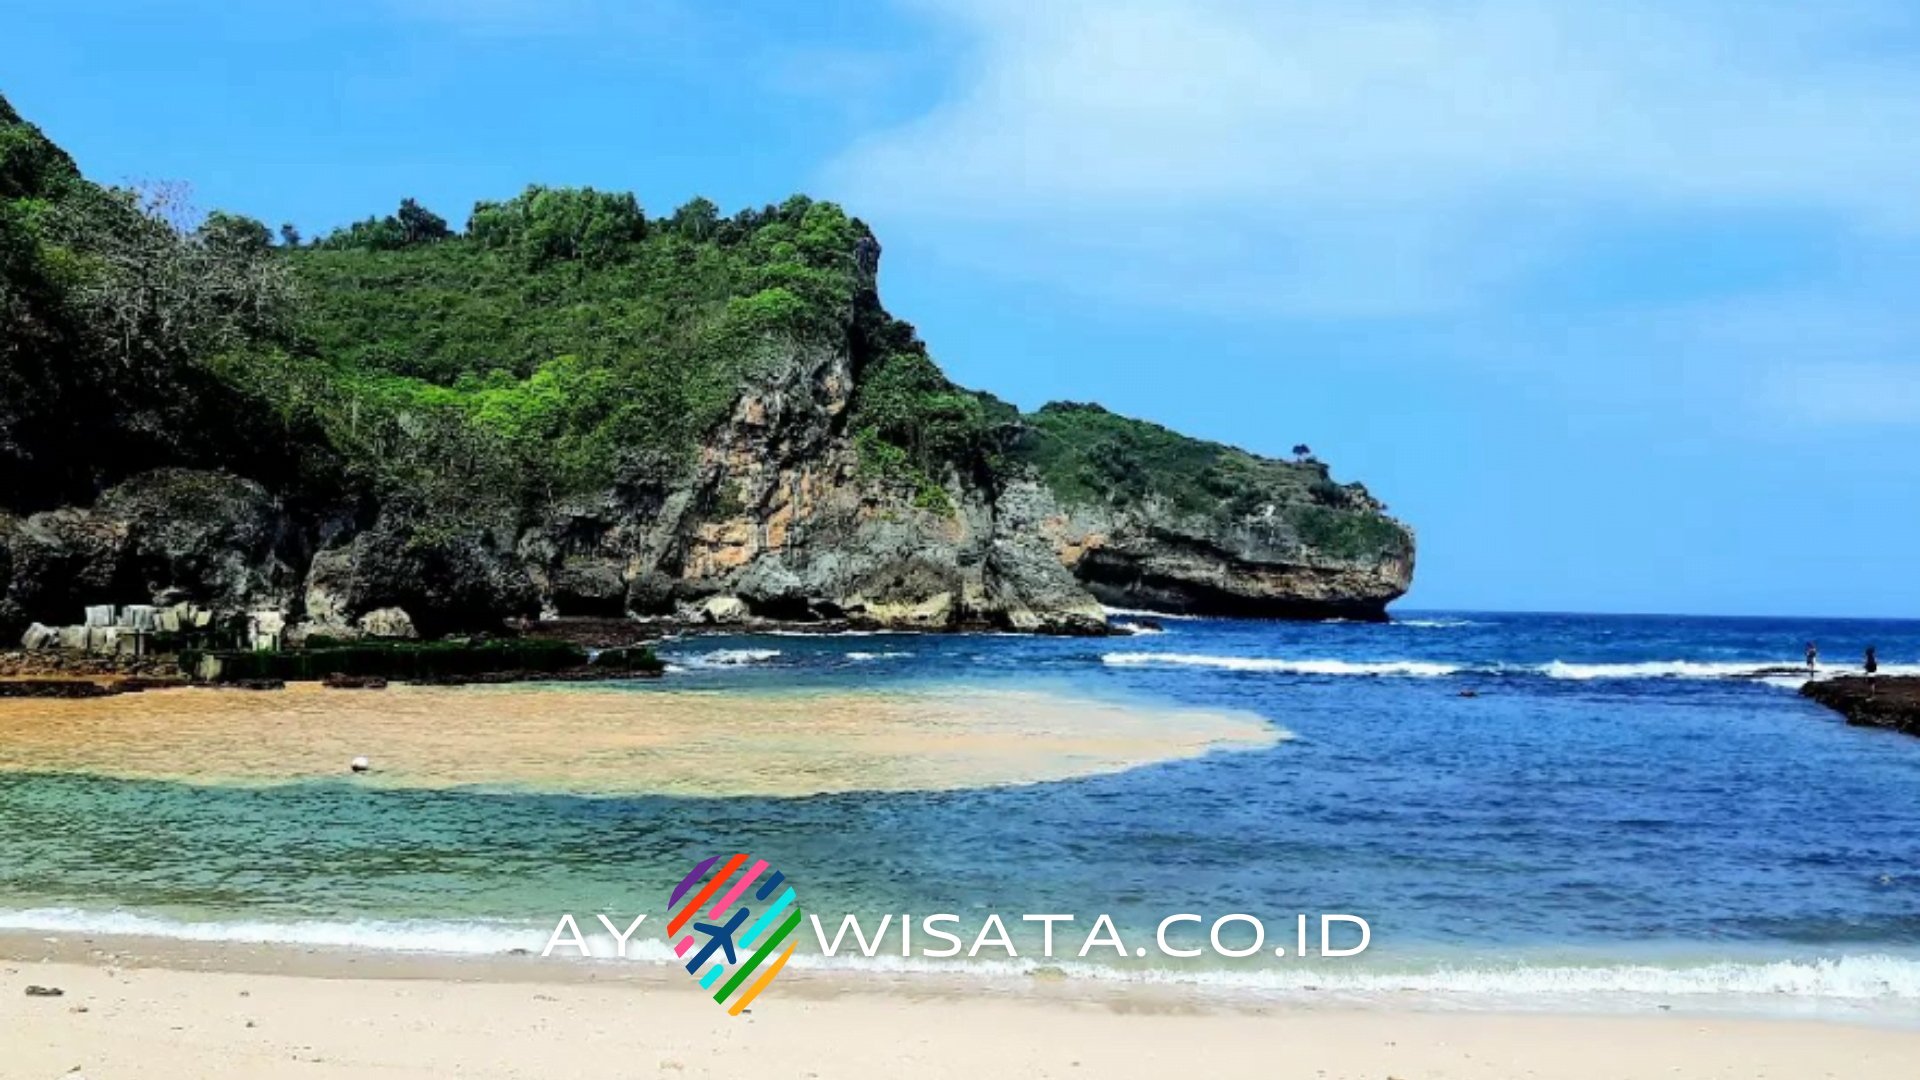 Pesona Alam Tersembunyi di Pantai Gesing Yogyakarta yang Membuatmu Terpesona